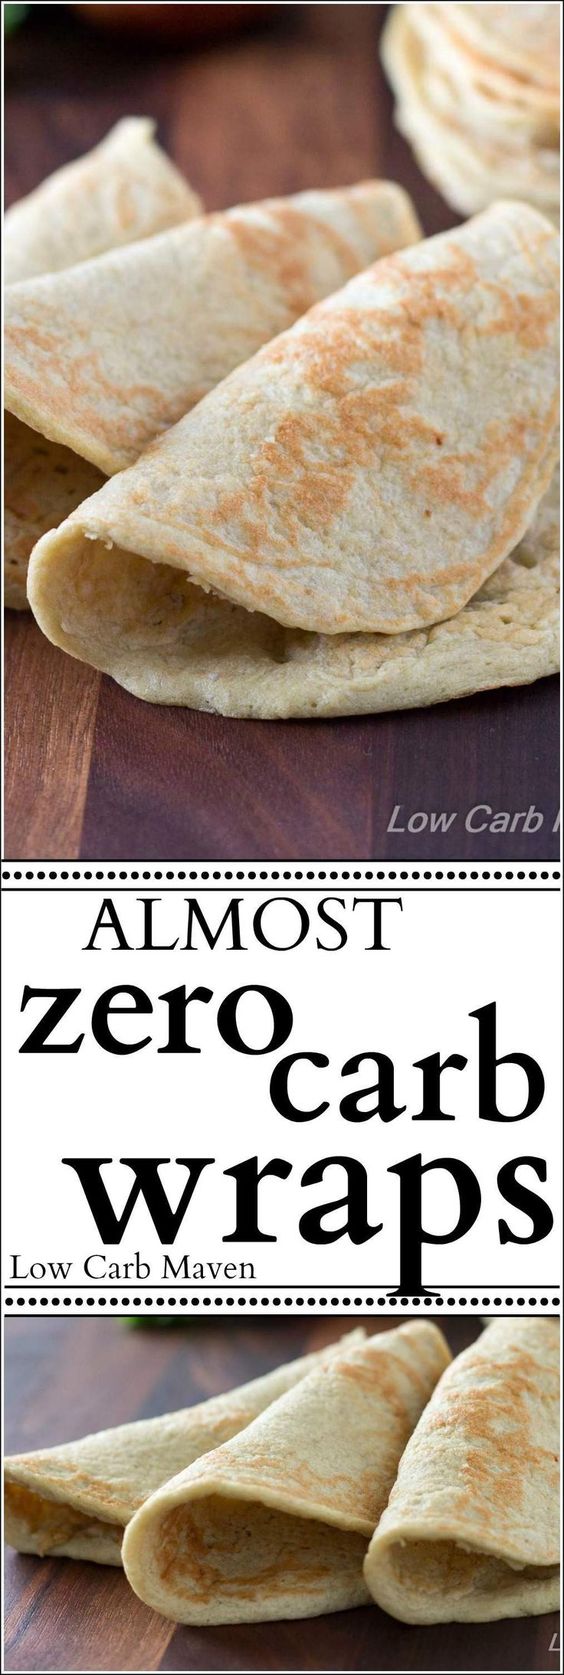 Almost Zero Carb Wraps